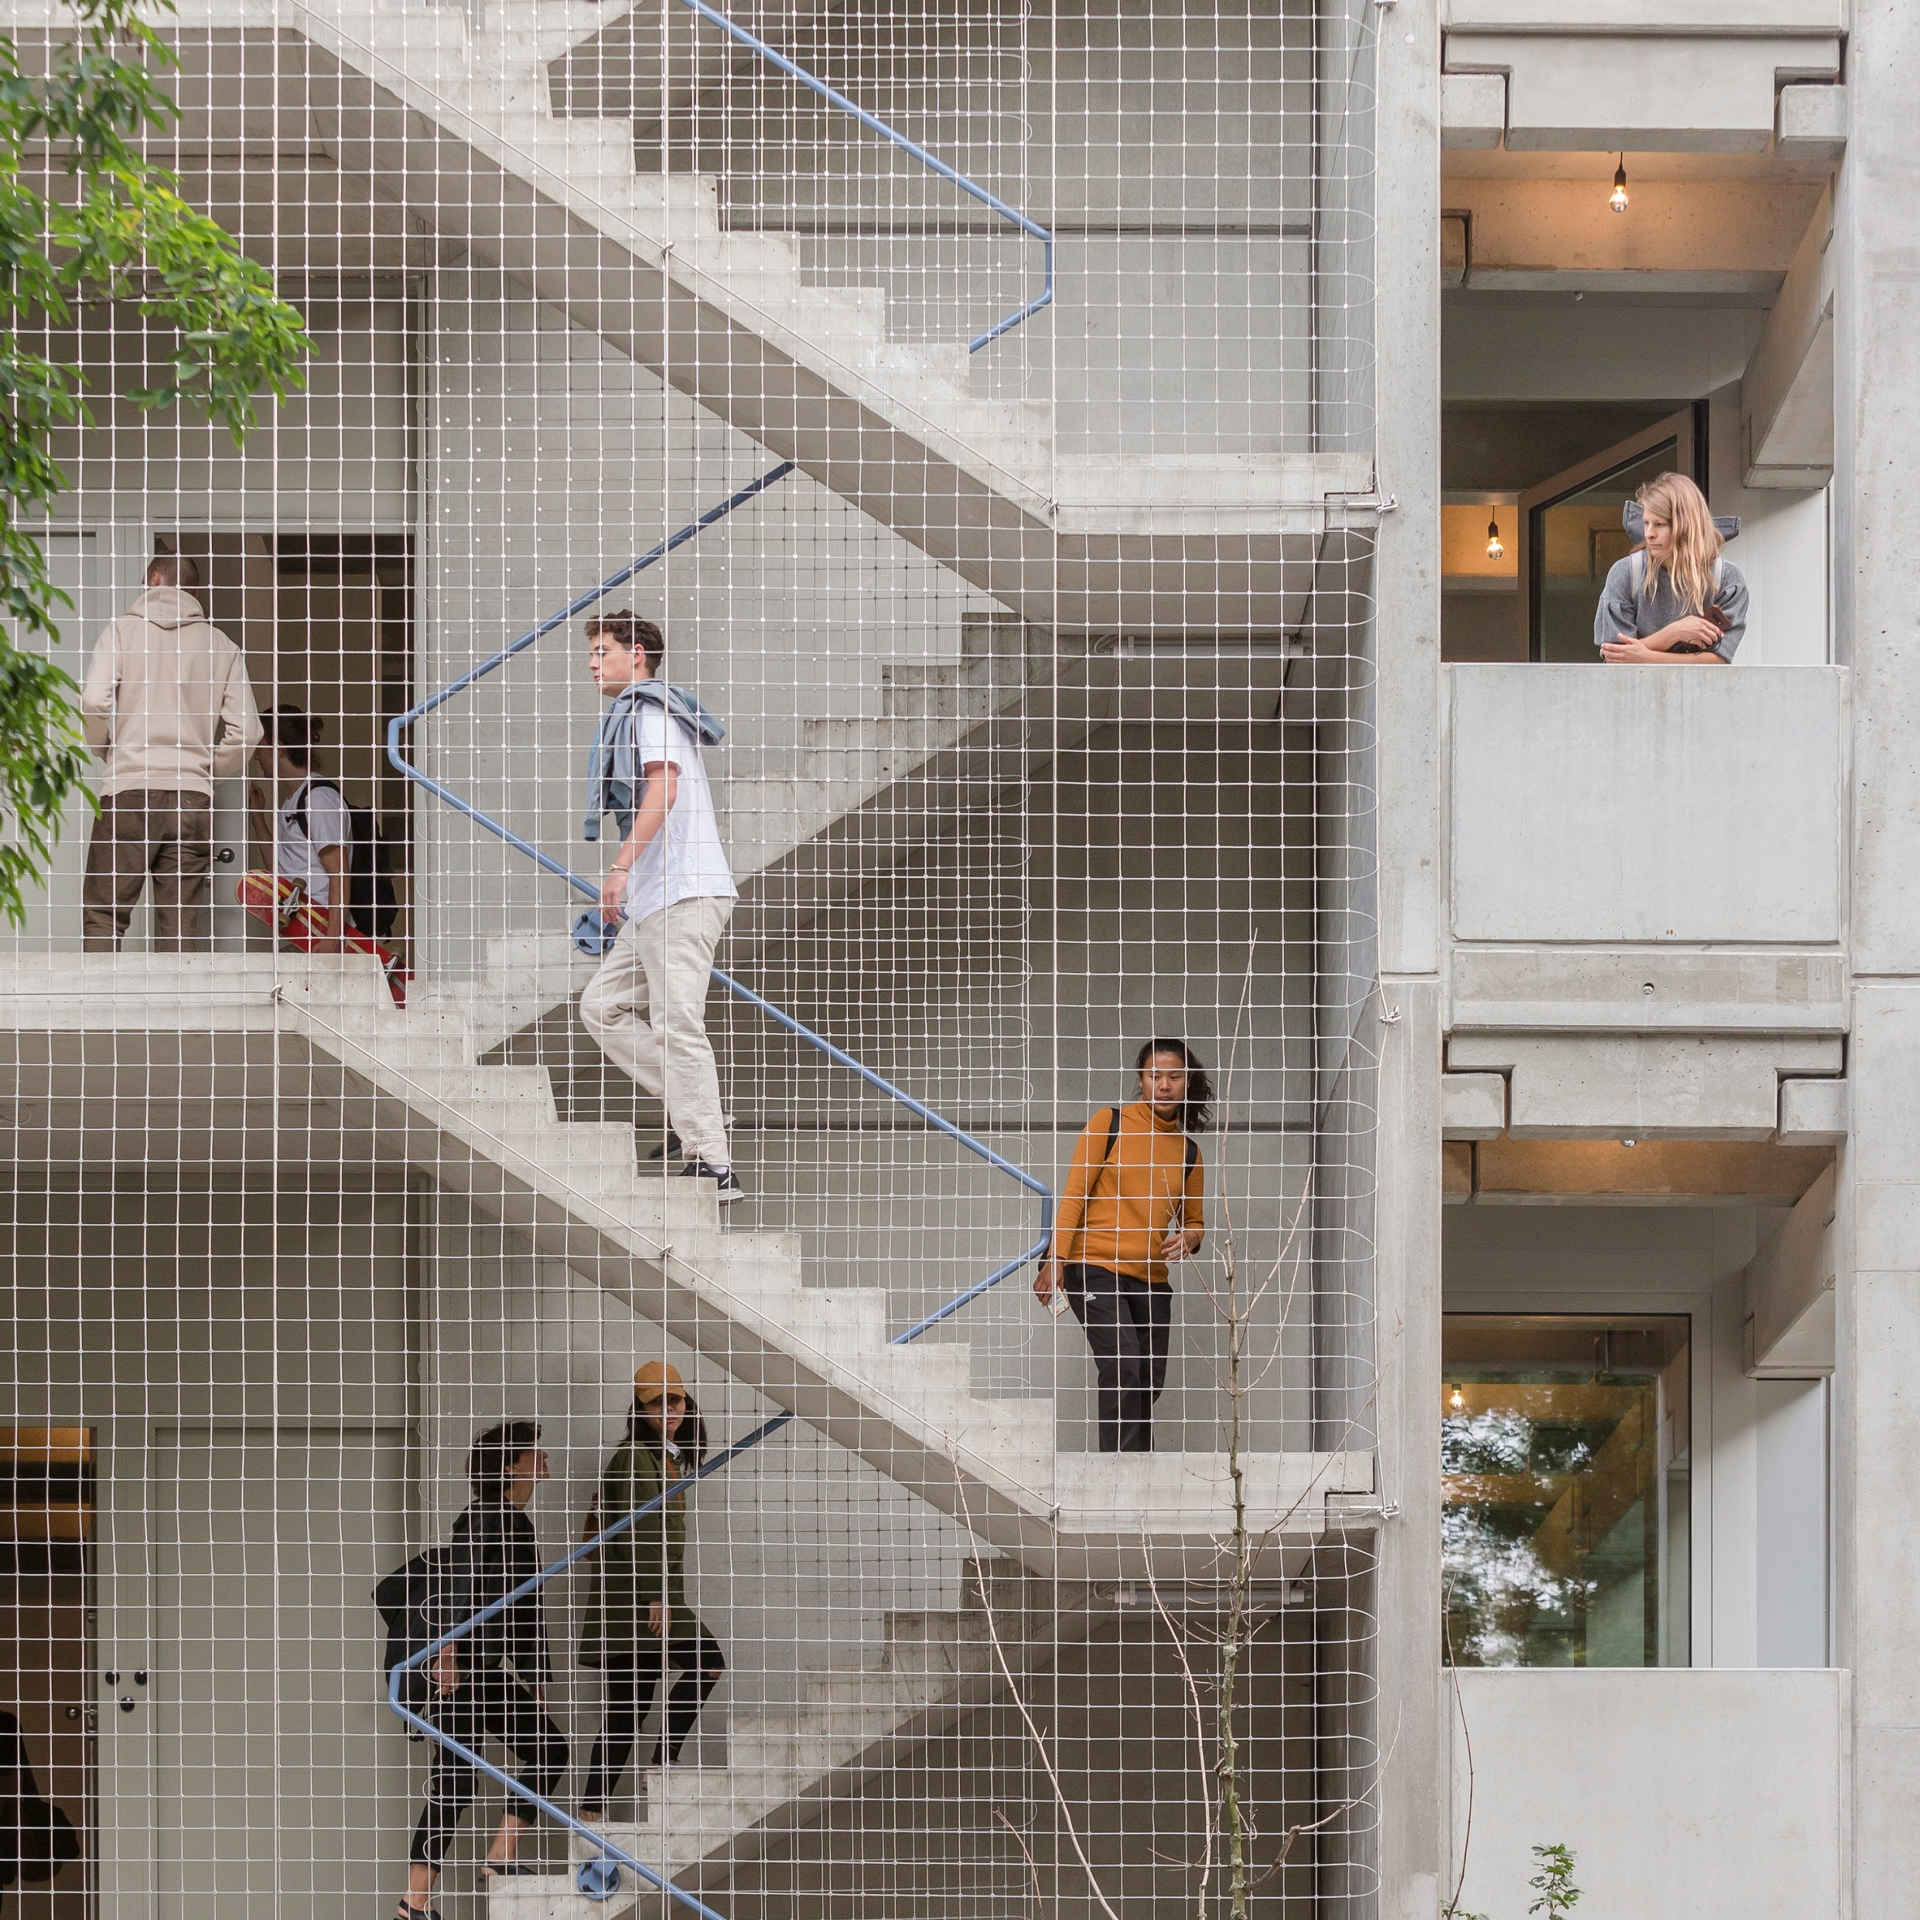 Các bậc cầu thang bê tông che chắn bằng lưới mỏng ngoằn ngoèo ở phía bên của khu căn hộ Wohnregal được thiết kế bởi studio kiến ​​trúc FAR (Berlin, Đức) đã lọt vào danh sách đề cử cho Giải thưởng Dezeen 2020.